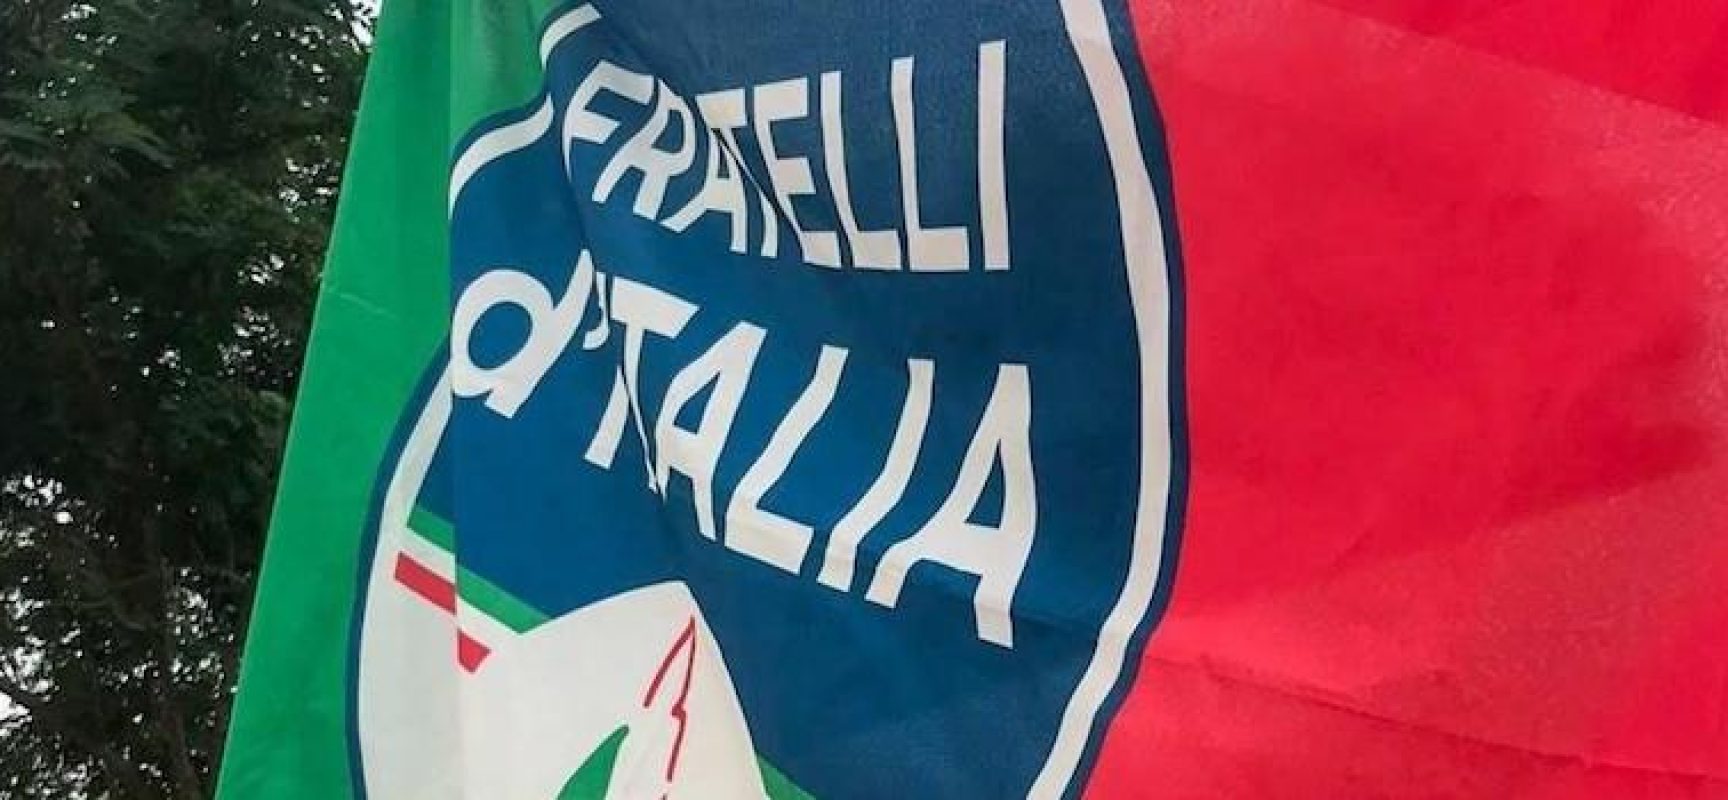 Fratelli d’Italia Bisceglie: “Violenza contro Cgil opera di delinquenti. No strumentalizzazioni”